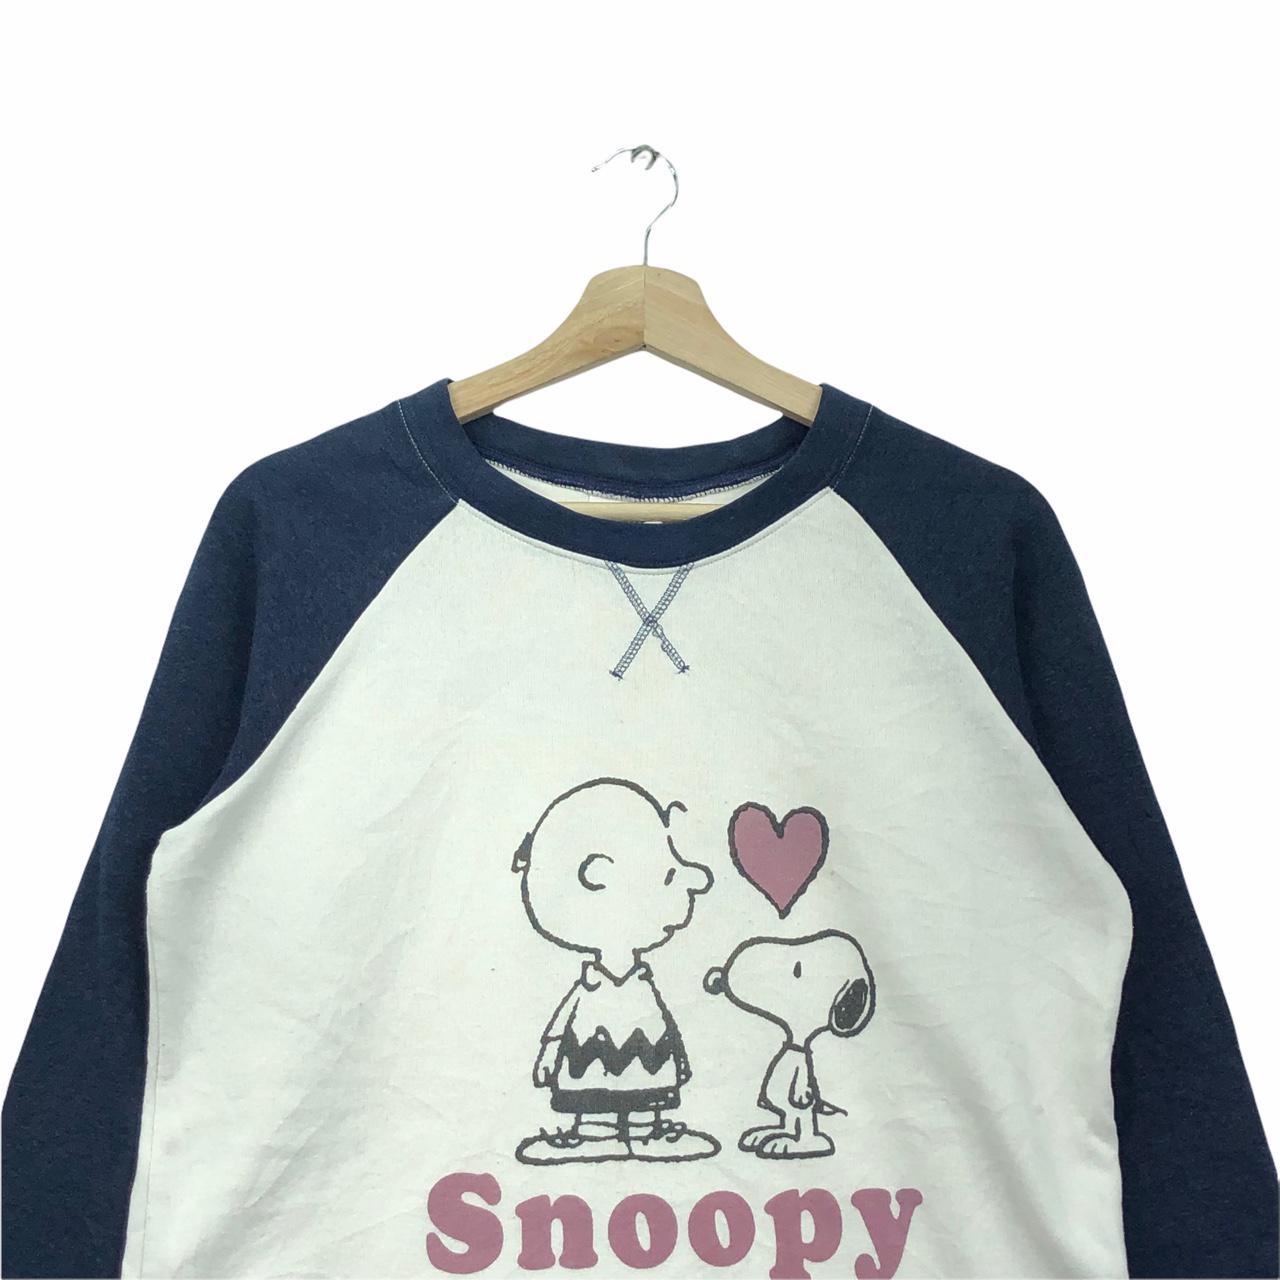 Vintage Snoopy Peanuts x Charlie Brown Long Sleeve... - Depop